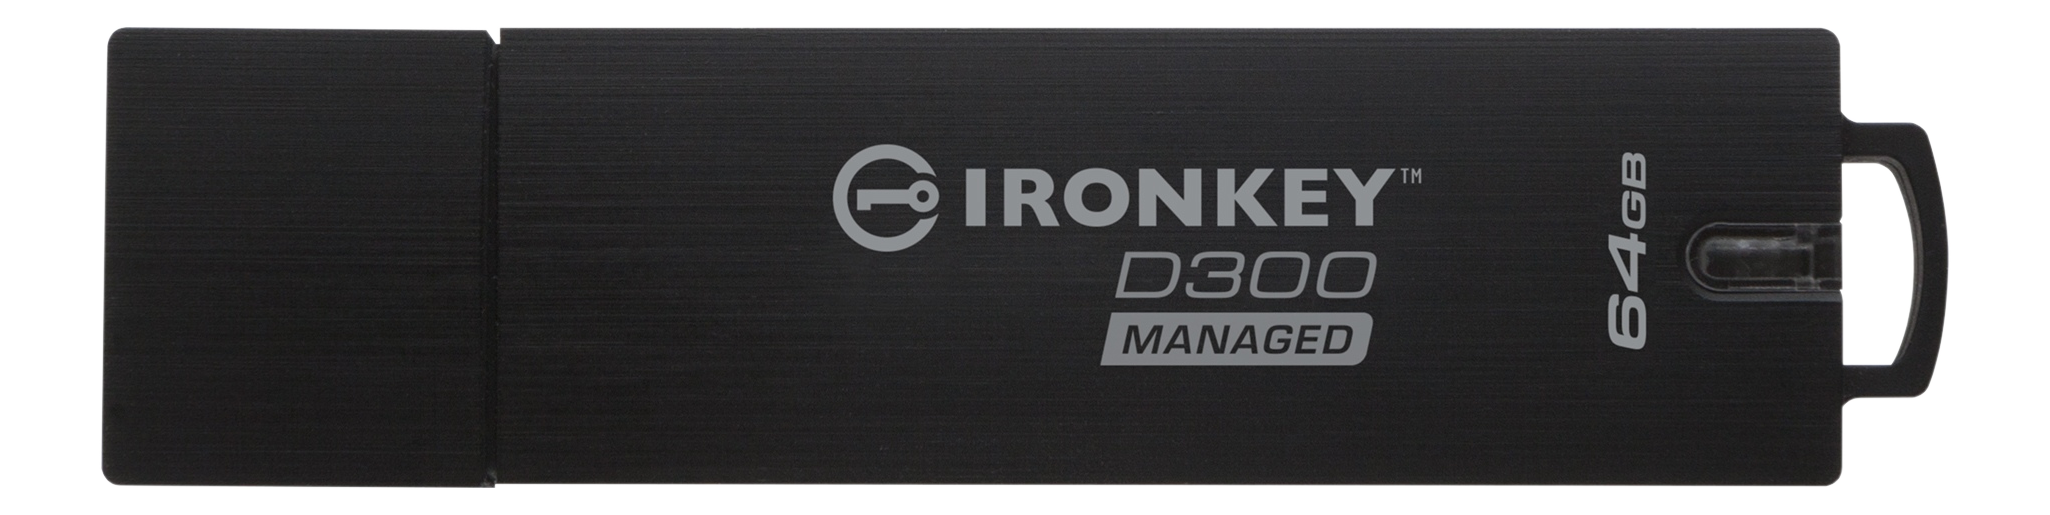 KINGSTON Ironkey D300 - Clé USB  (64 GB, Noir)